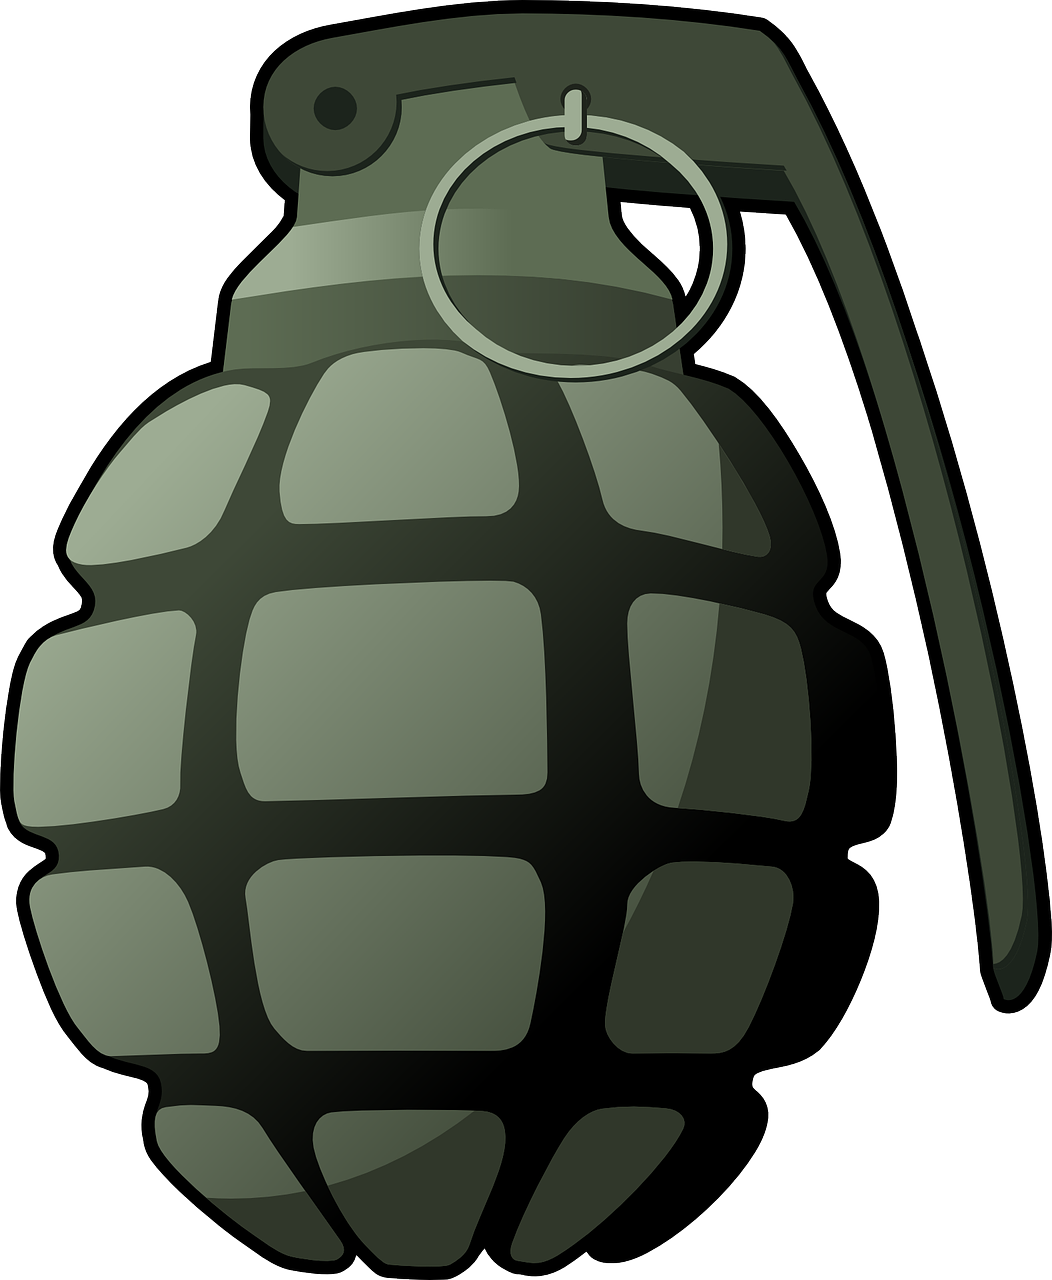 hand grenade grenade explosive free photo